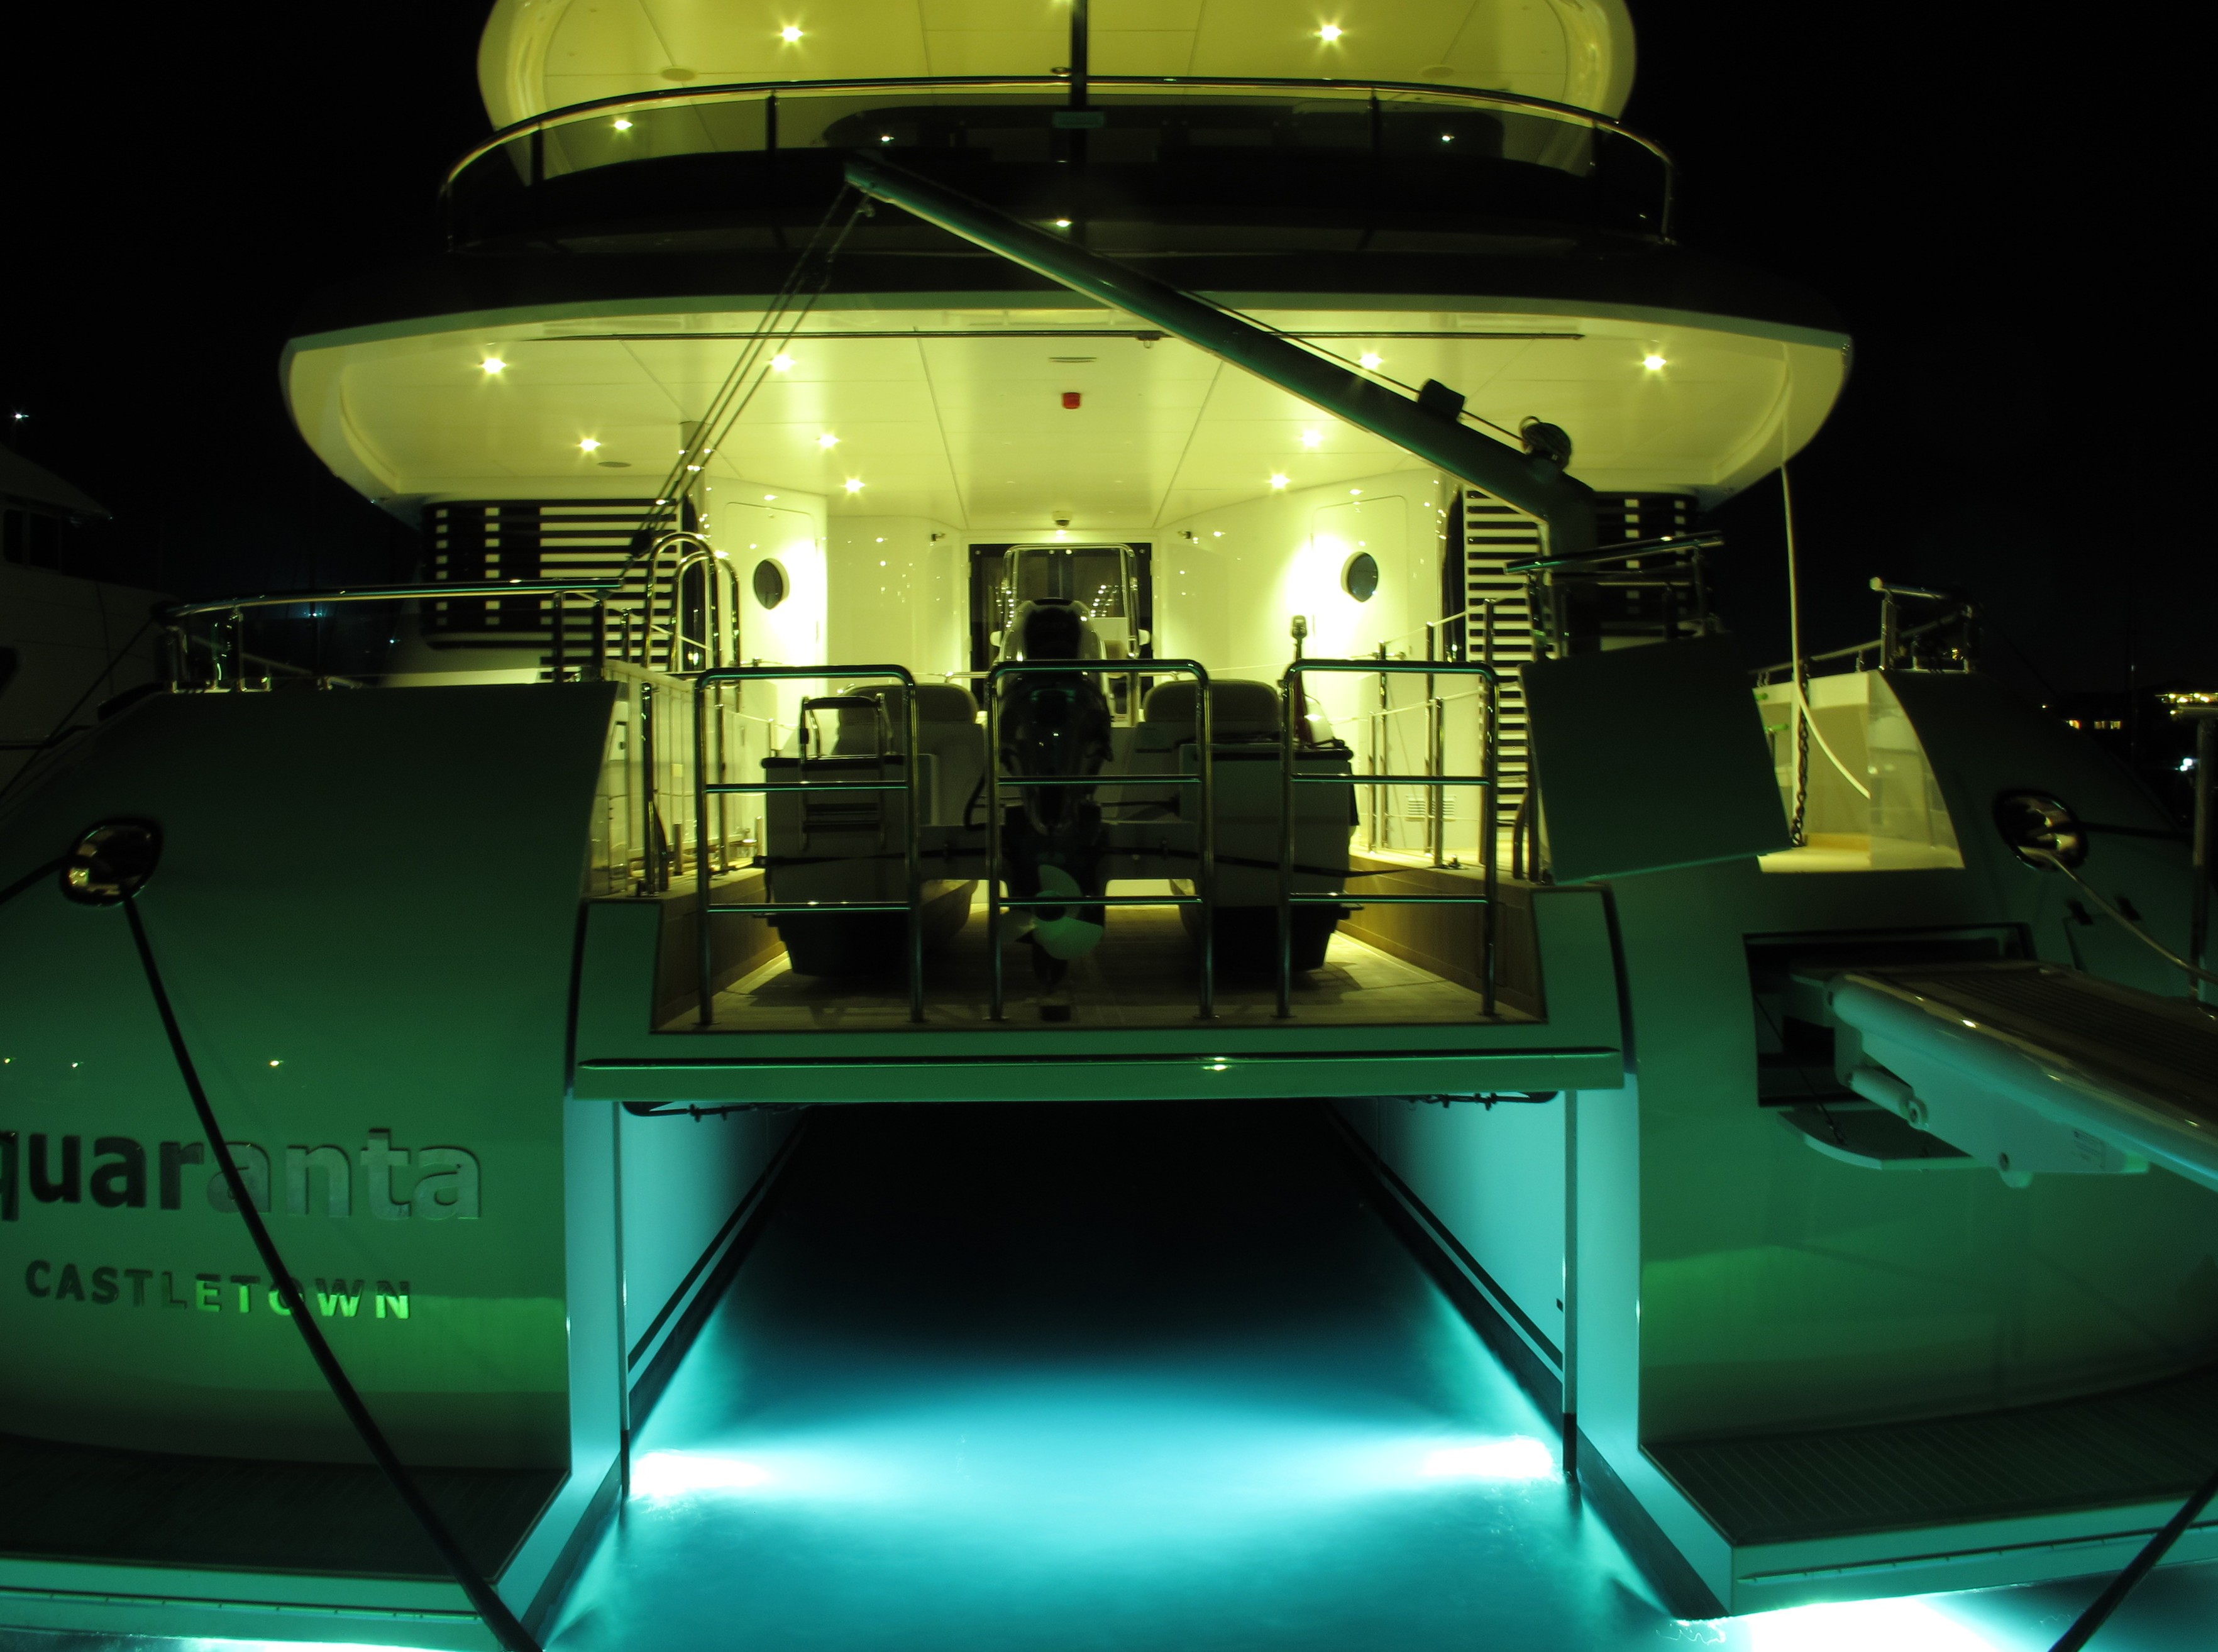 The 34m Yacht QUARANTA